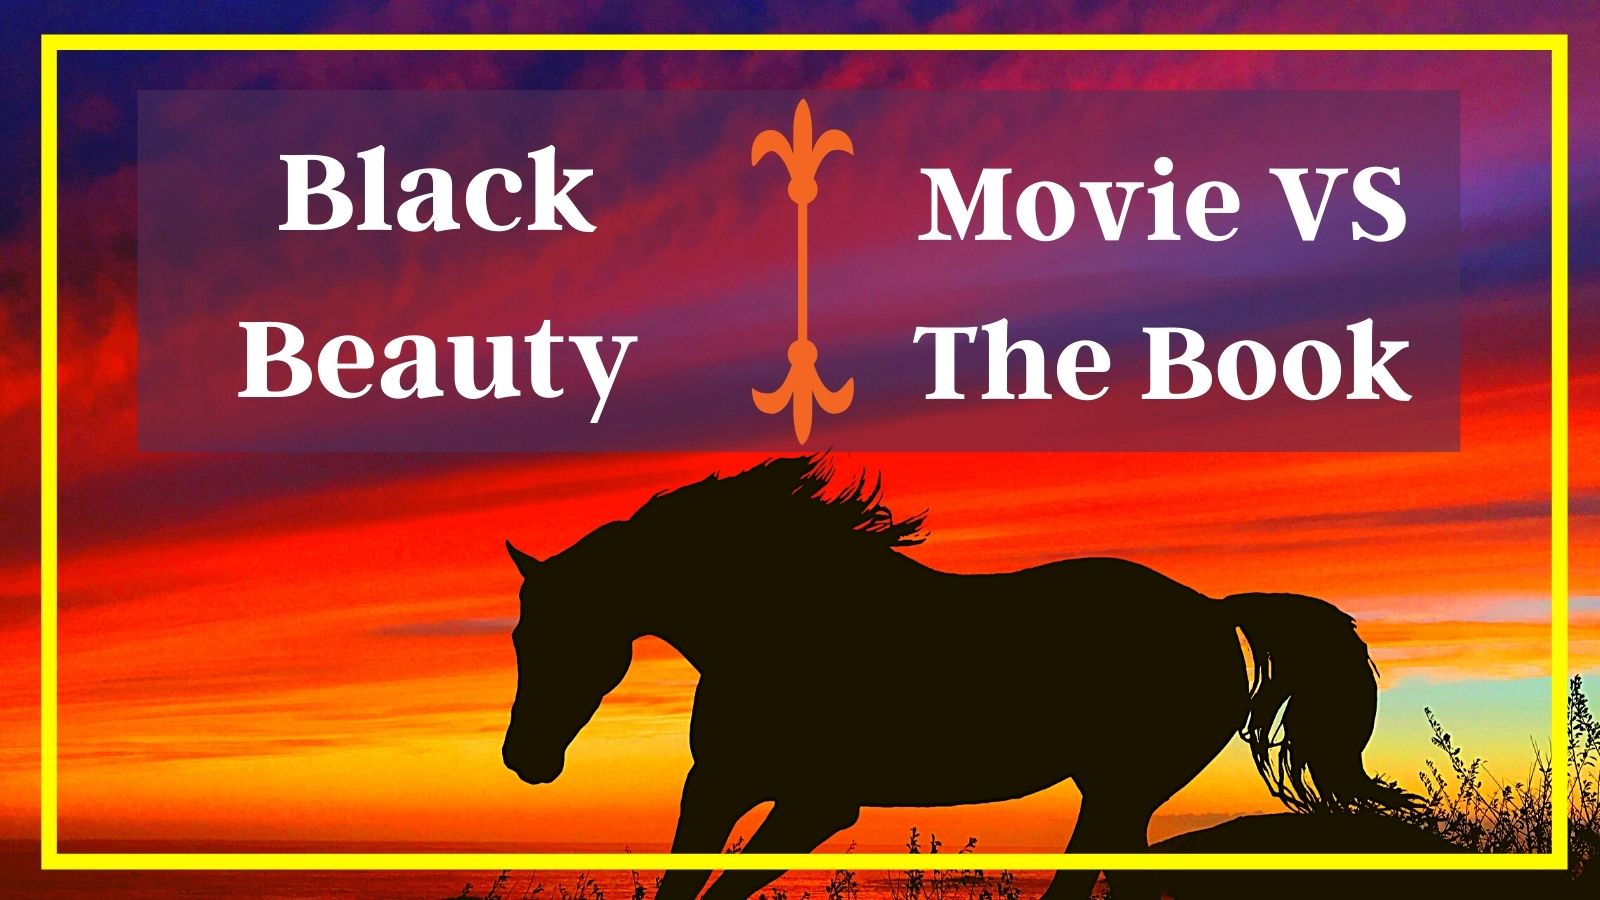 Black Beauty Movie Vs the Book